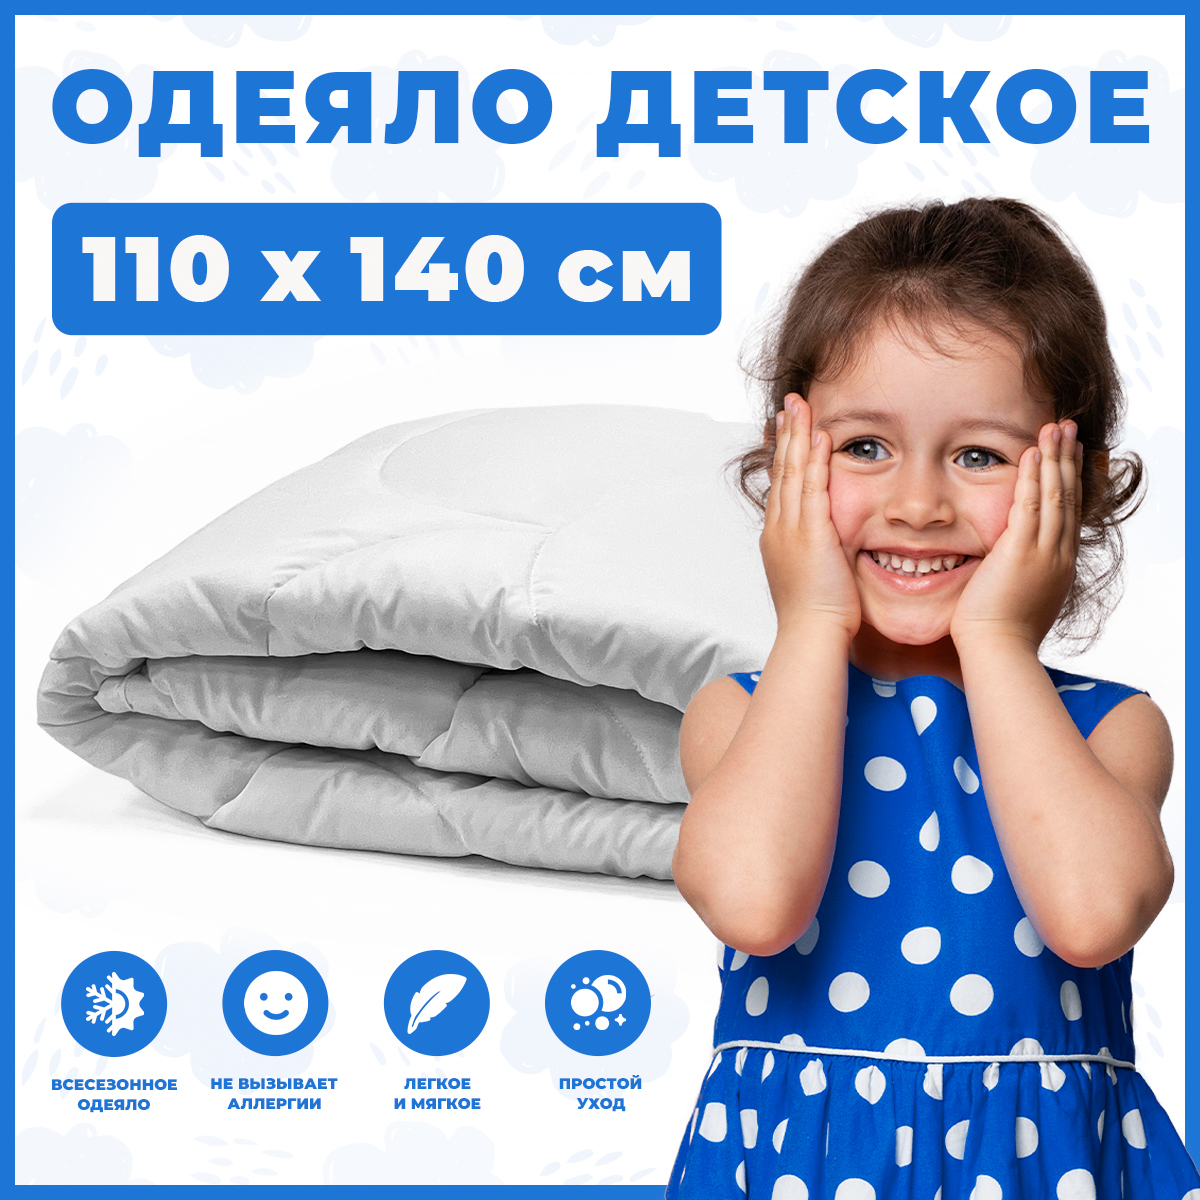 Одеяло детское Sweet Baby Ideale 110х140 микрофибра одеяло daisy девочки 110х140 см